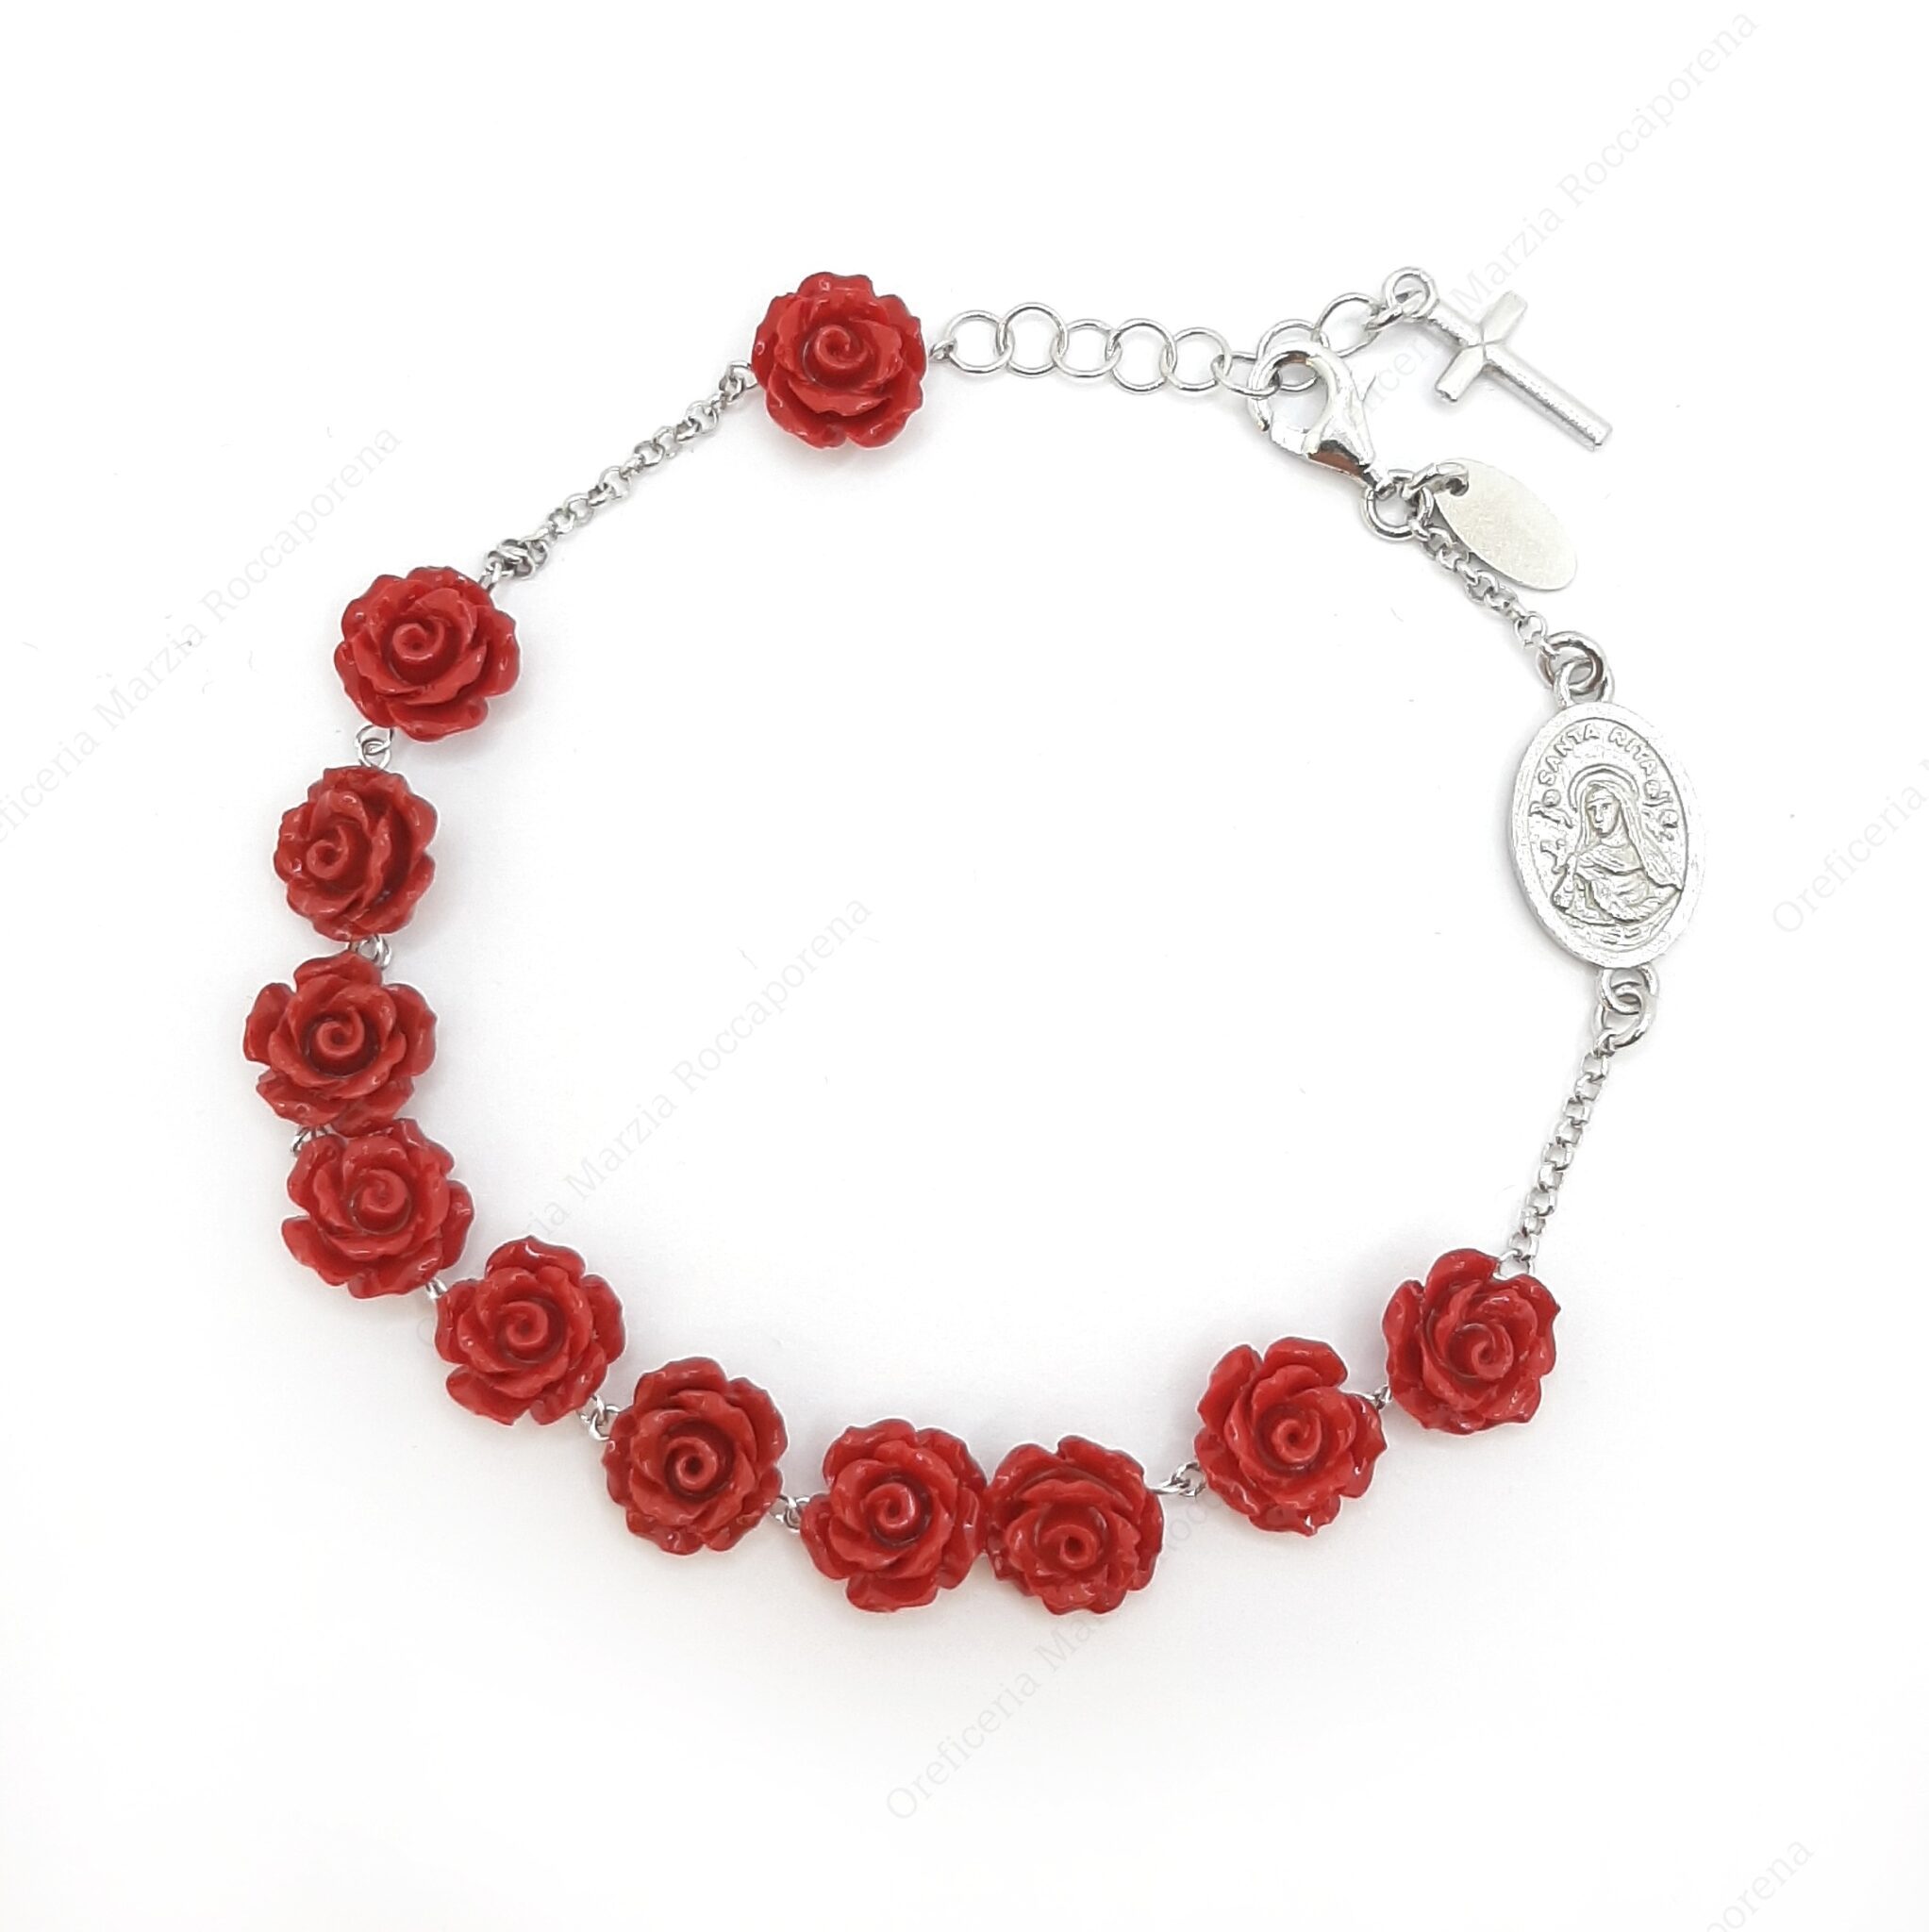 https://oreficeriamarzia.com/wp-content/uploads/2021/08/Bracciale-rosario-in-argento-con-rose-rosse.jpg